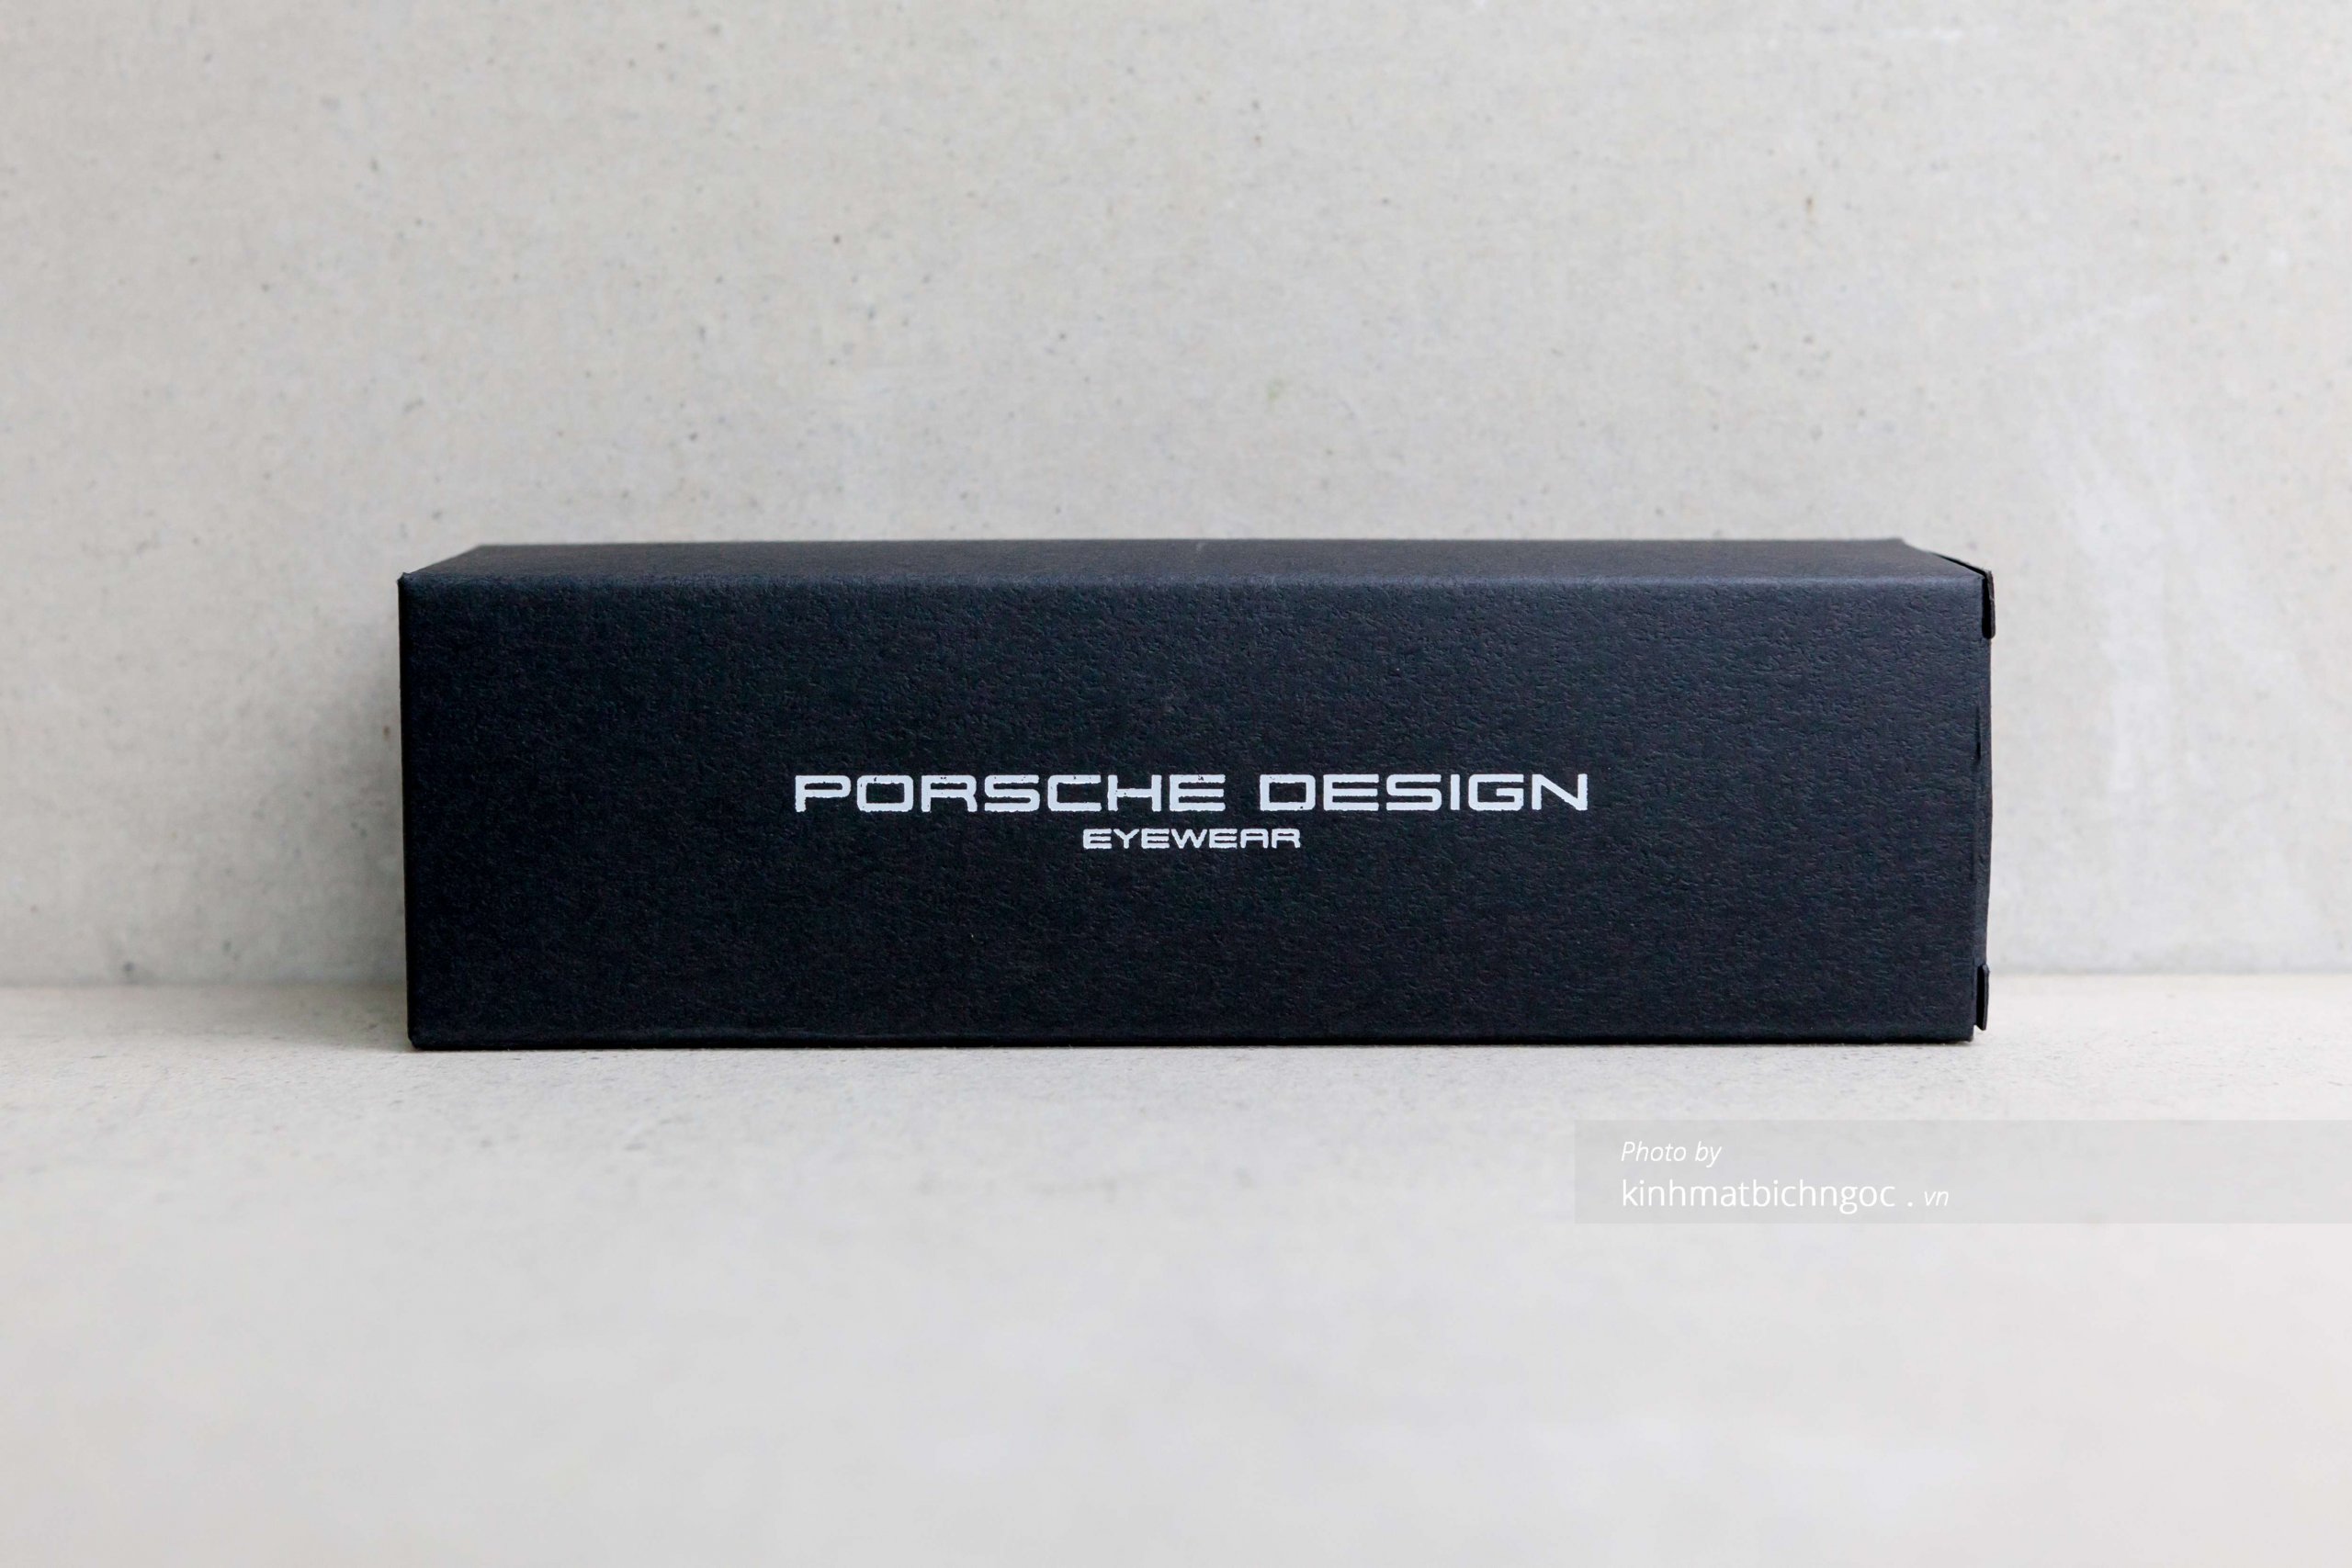 Vỏ hộp đựng kính Porsche Design chính hãng